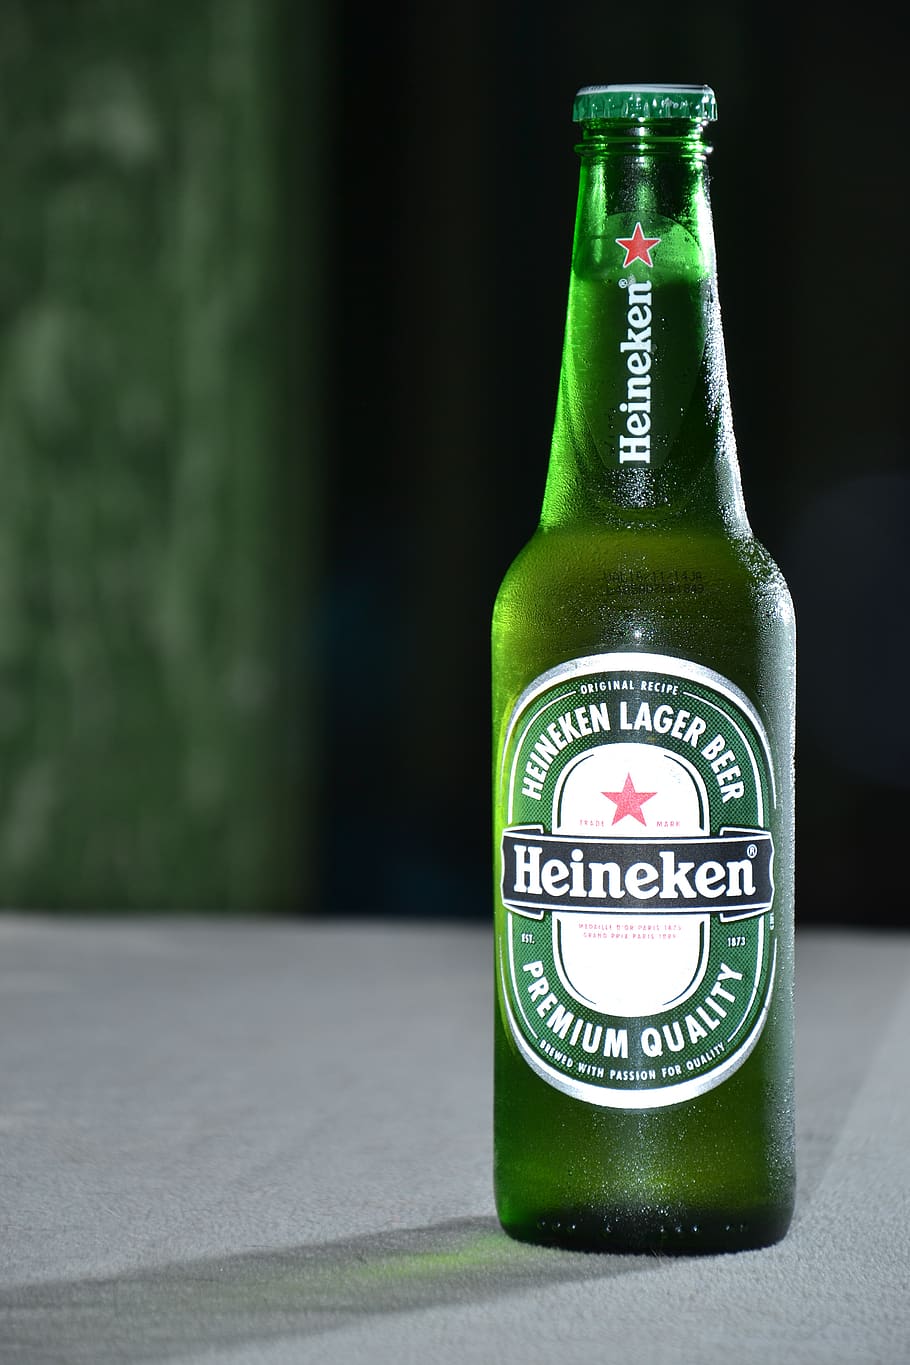 heineken, beer, bottle, green, brightness, drinks, container, drink, refreshment, focus on foreground